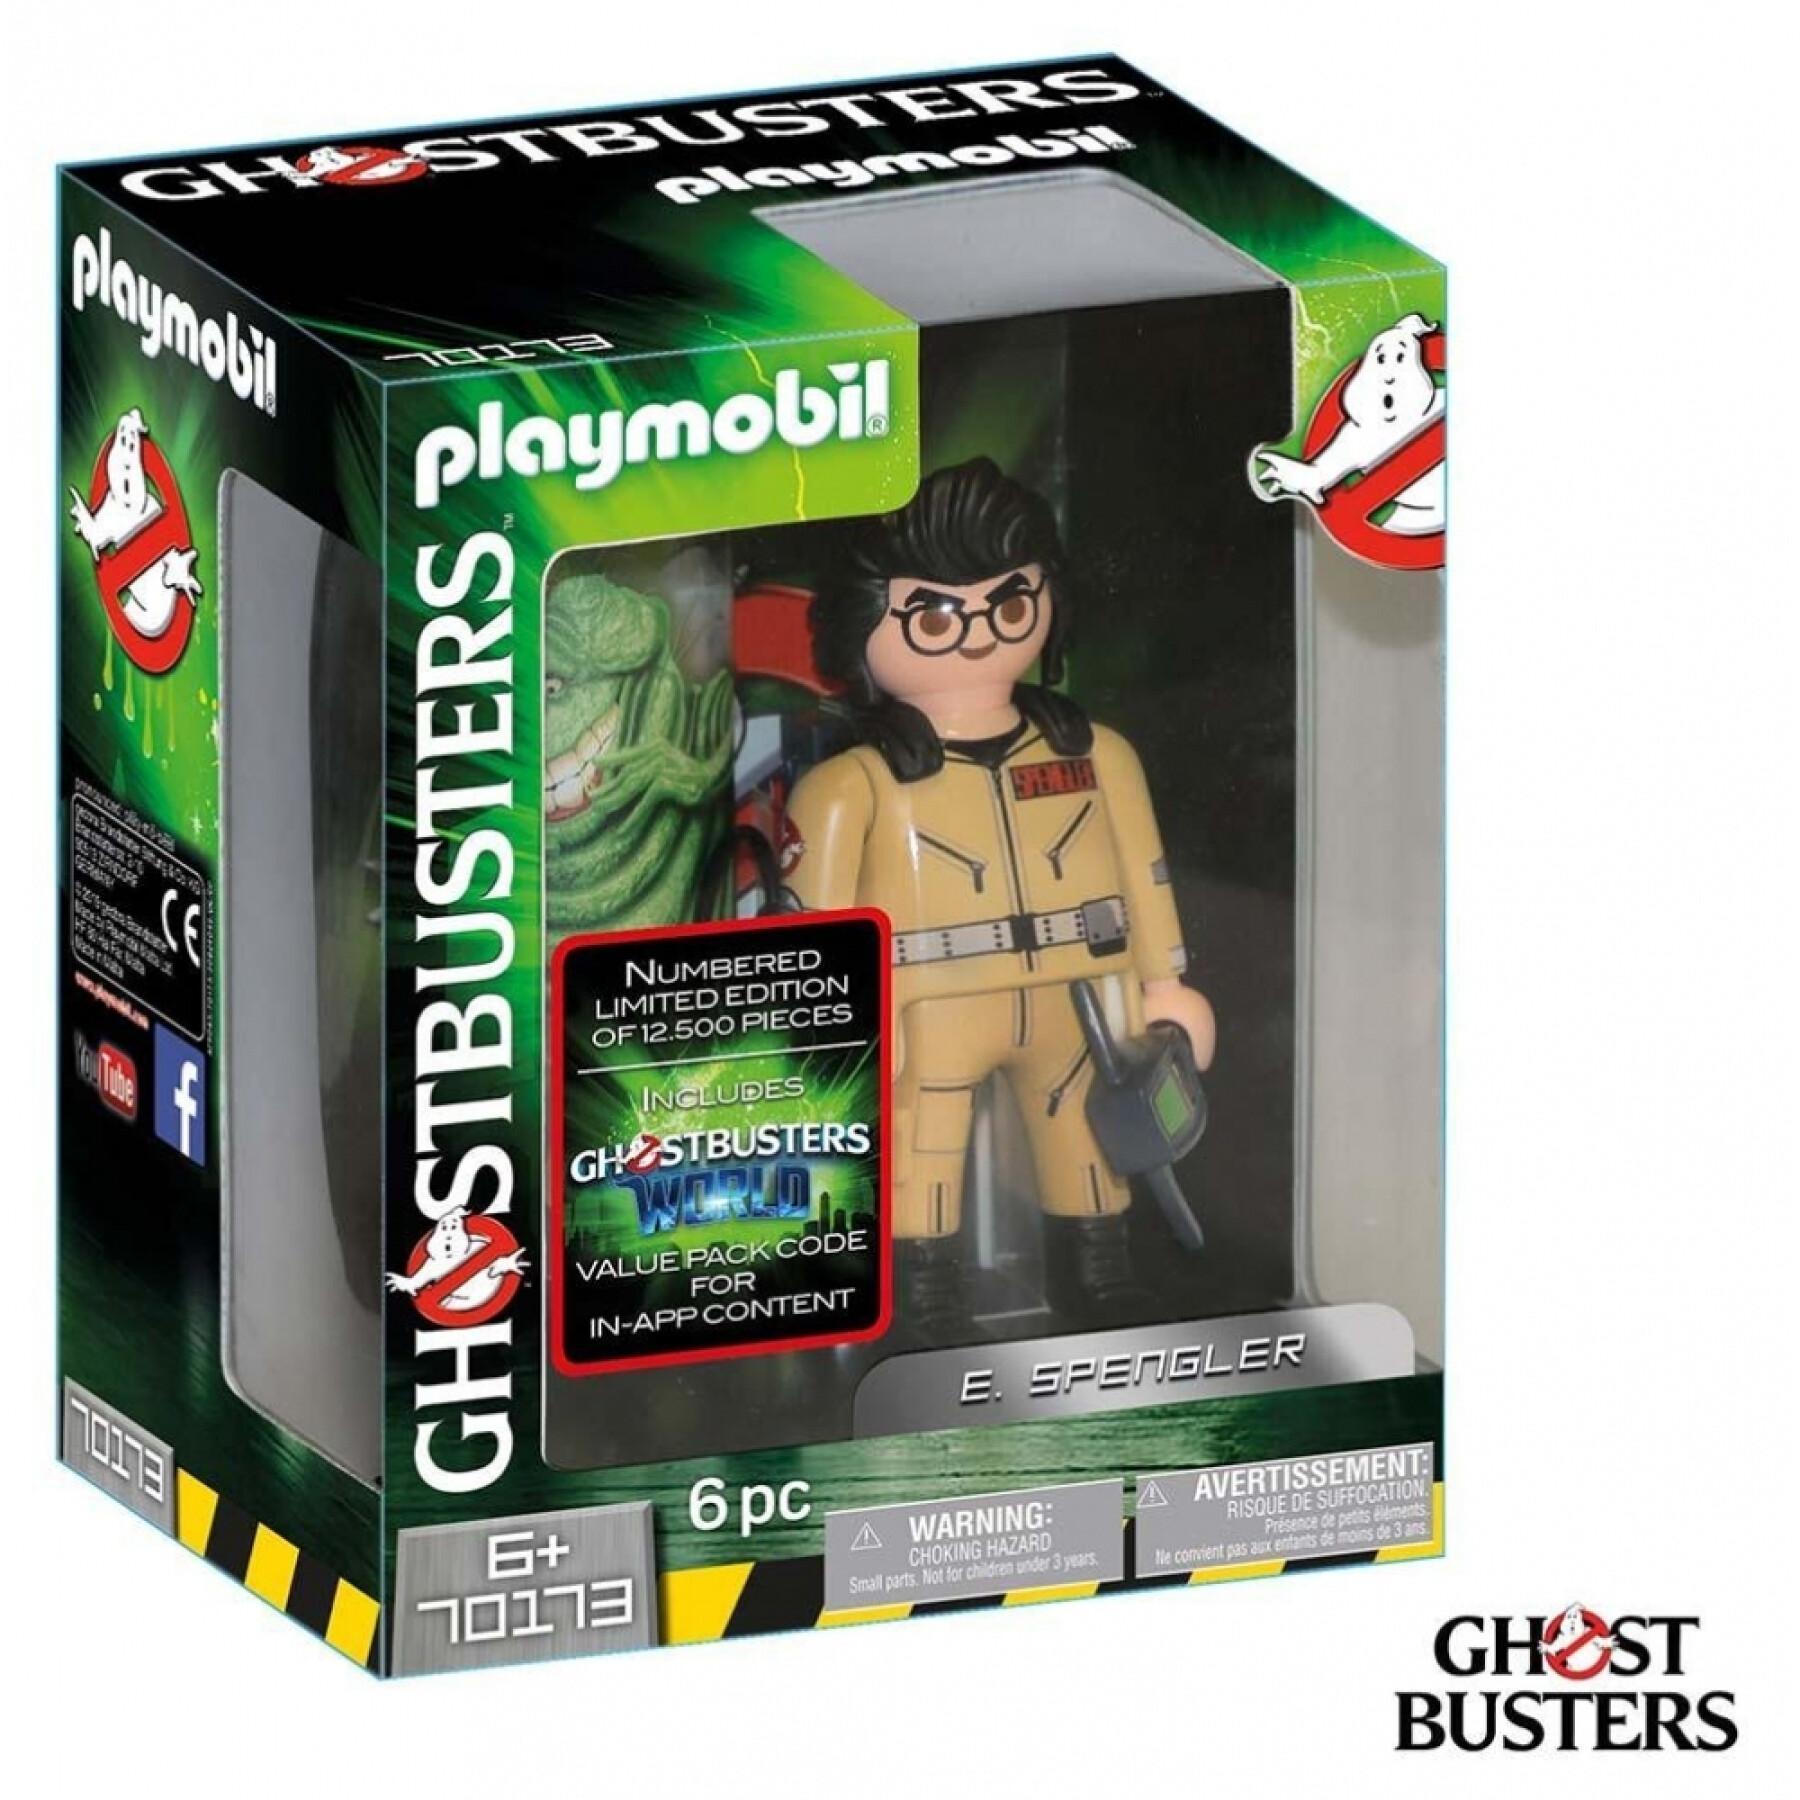 Figurine ghostbusters es Playmobil